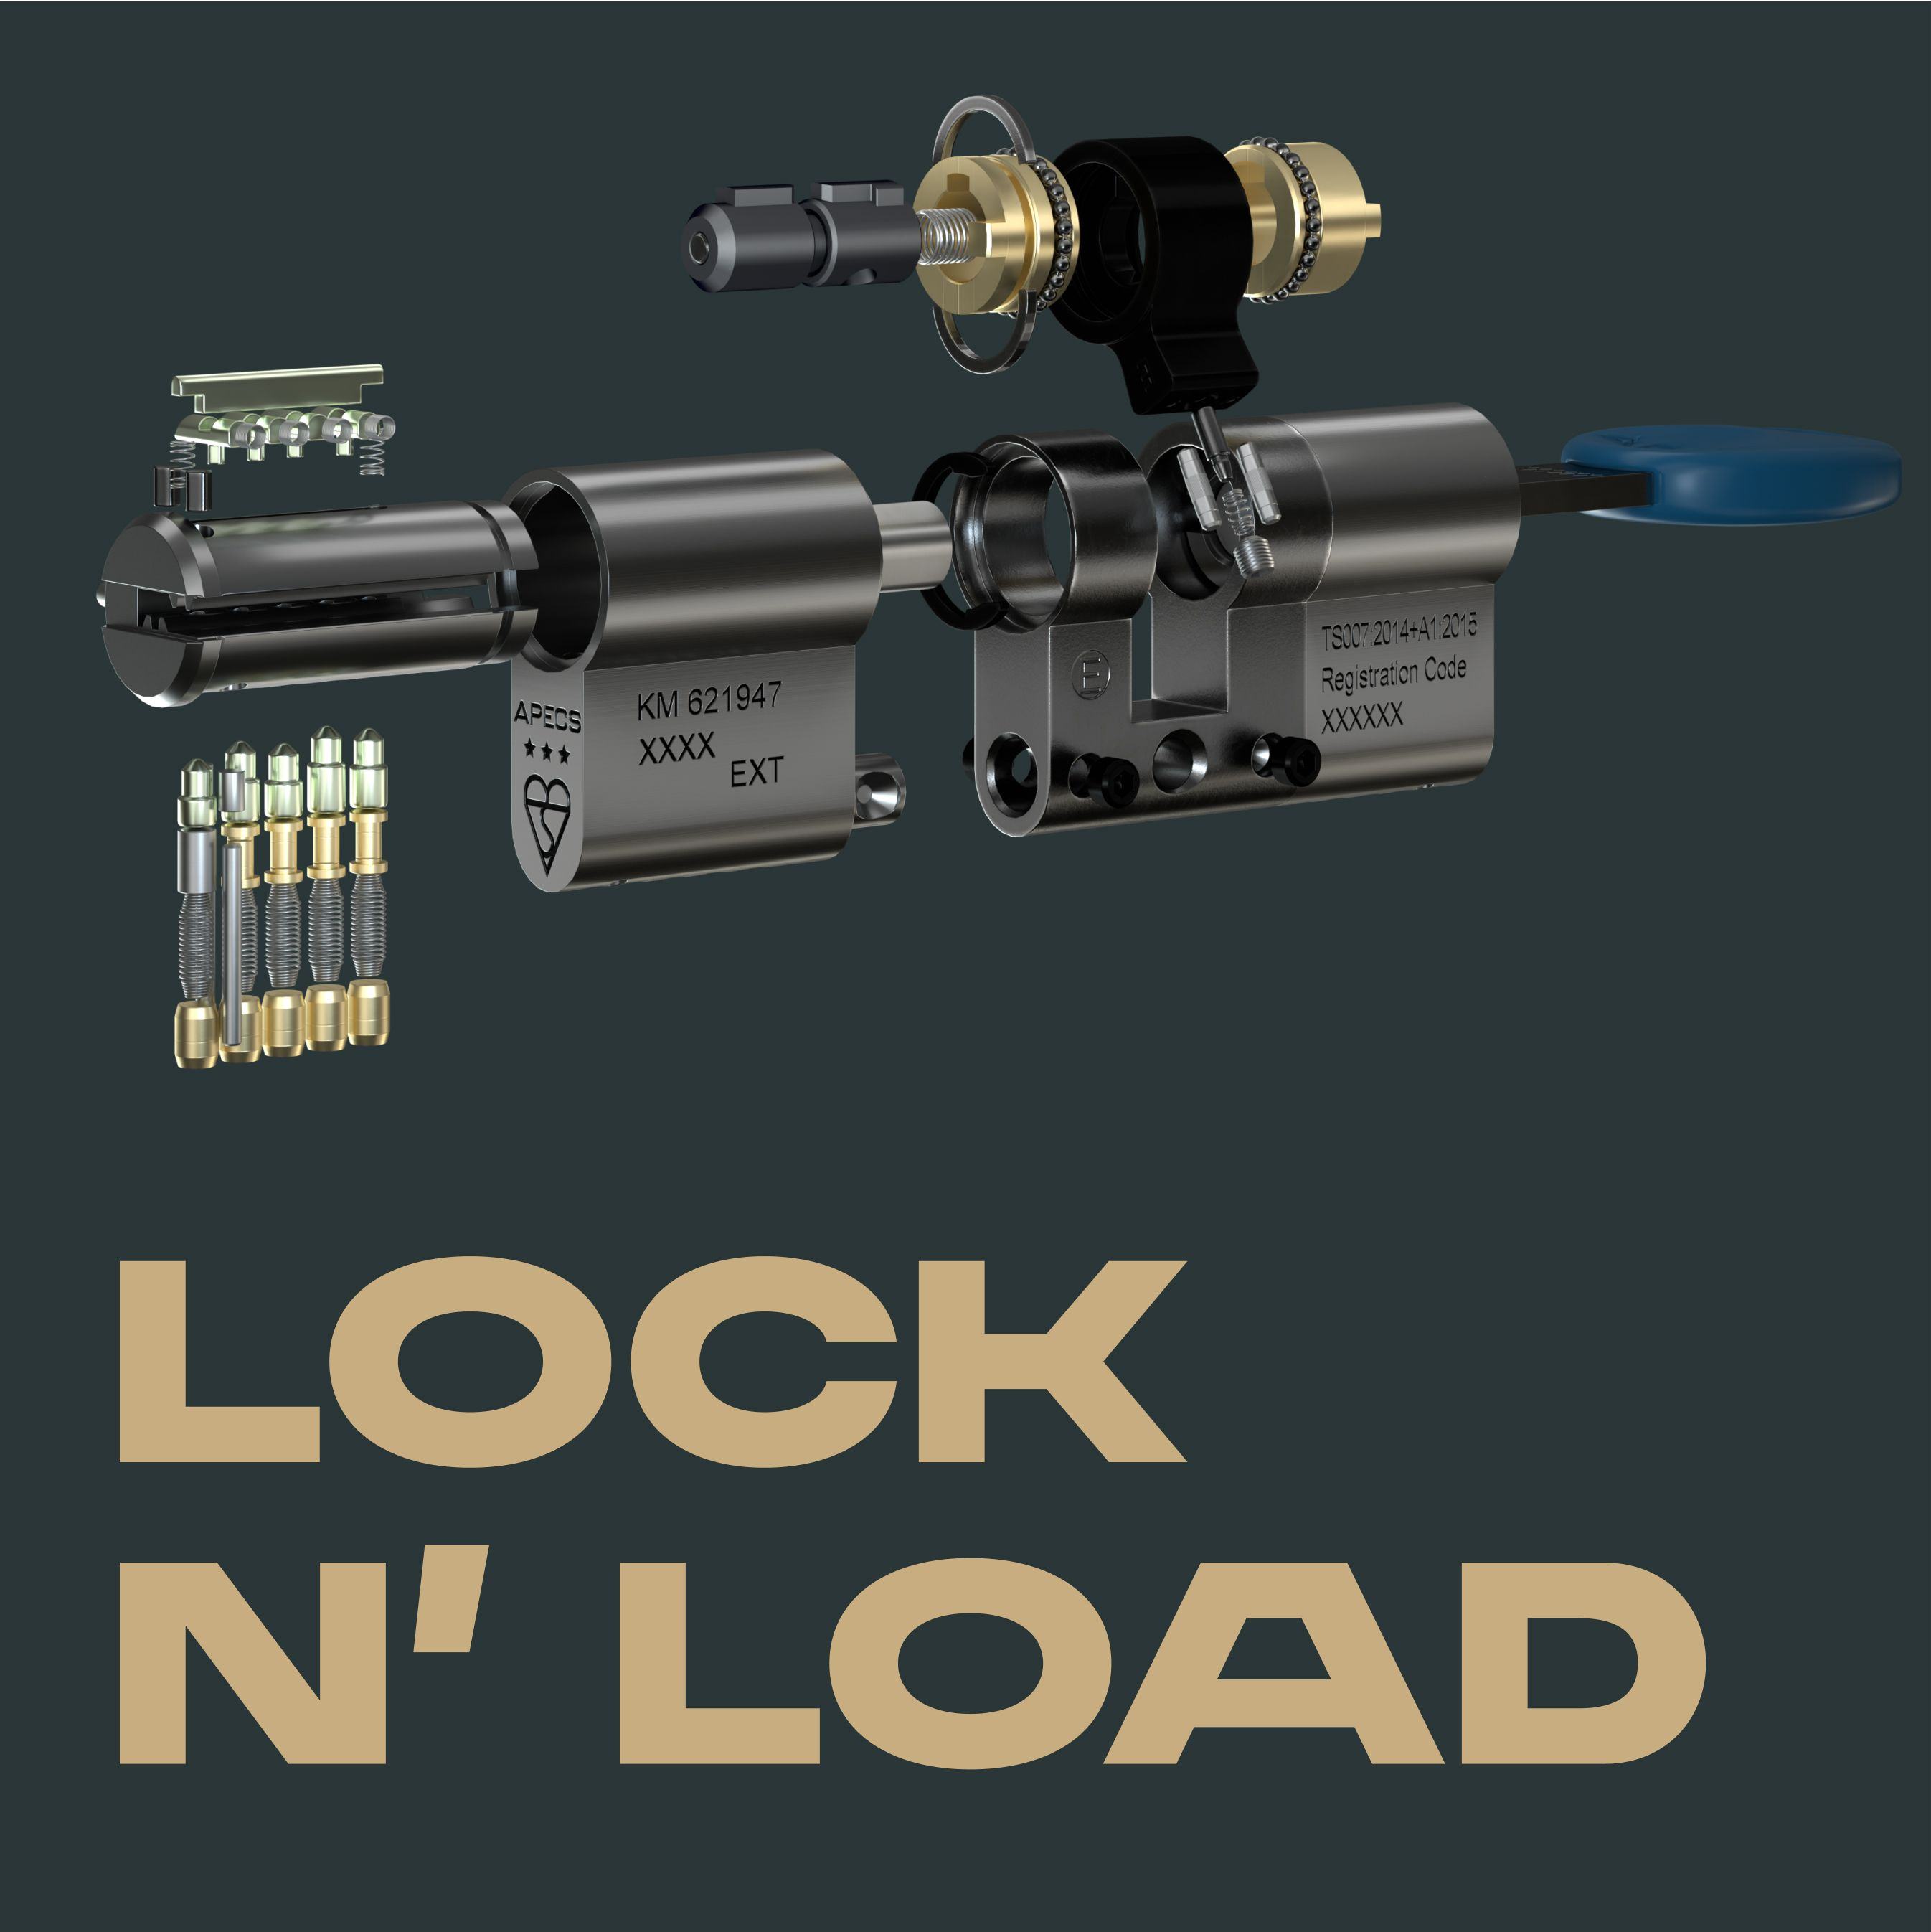 Apecs locks poster ad lock n' load